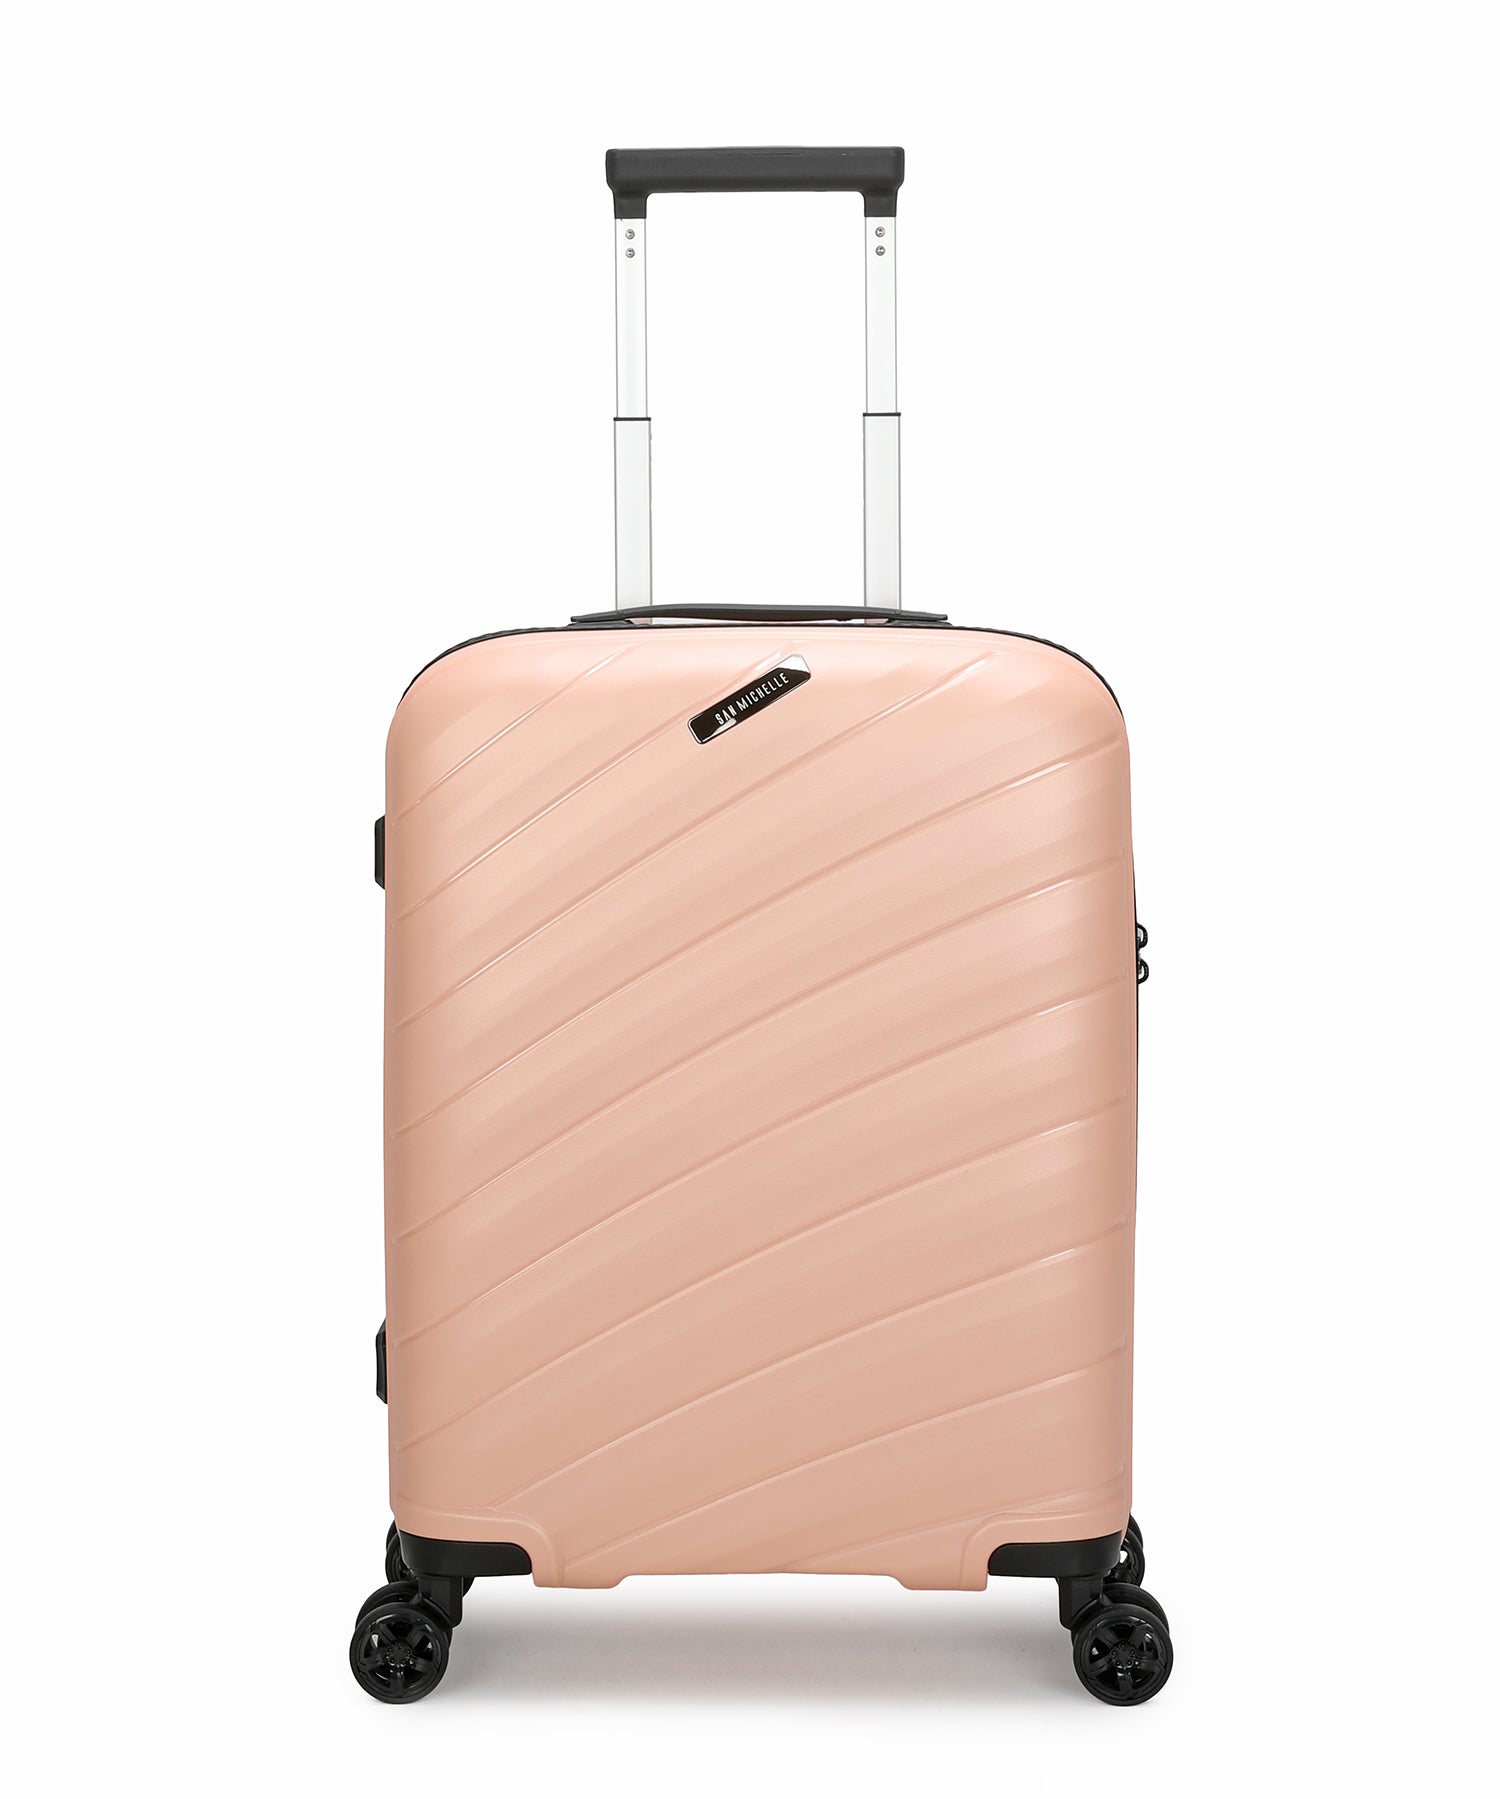 San Michelle Elite Explorer 55cm Suitcase